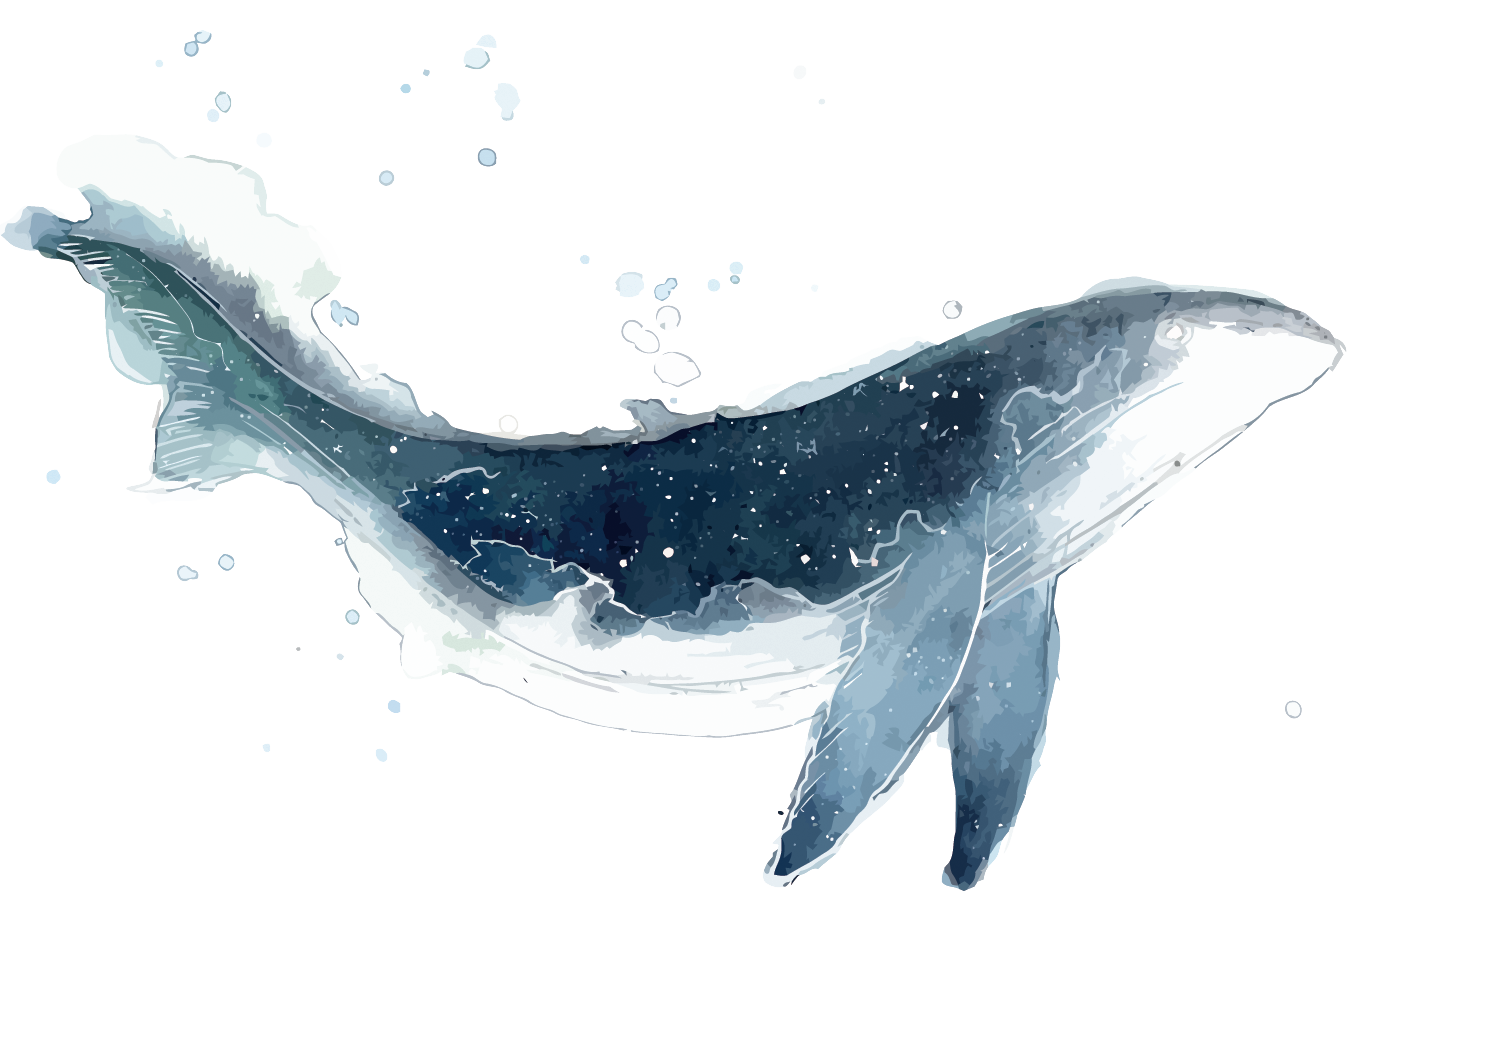 手绘卡通水墨海洋鲸鱼装饰元素